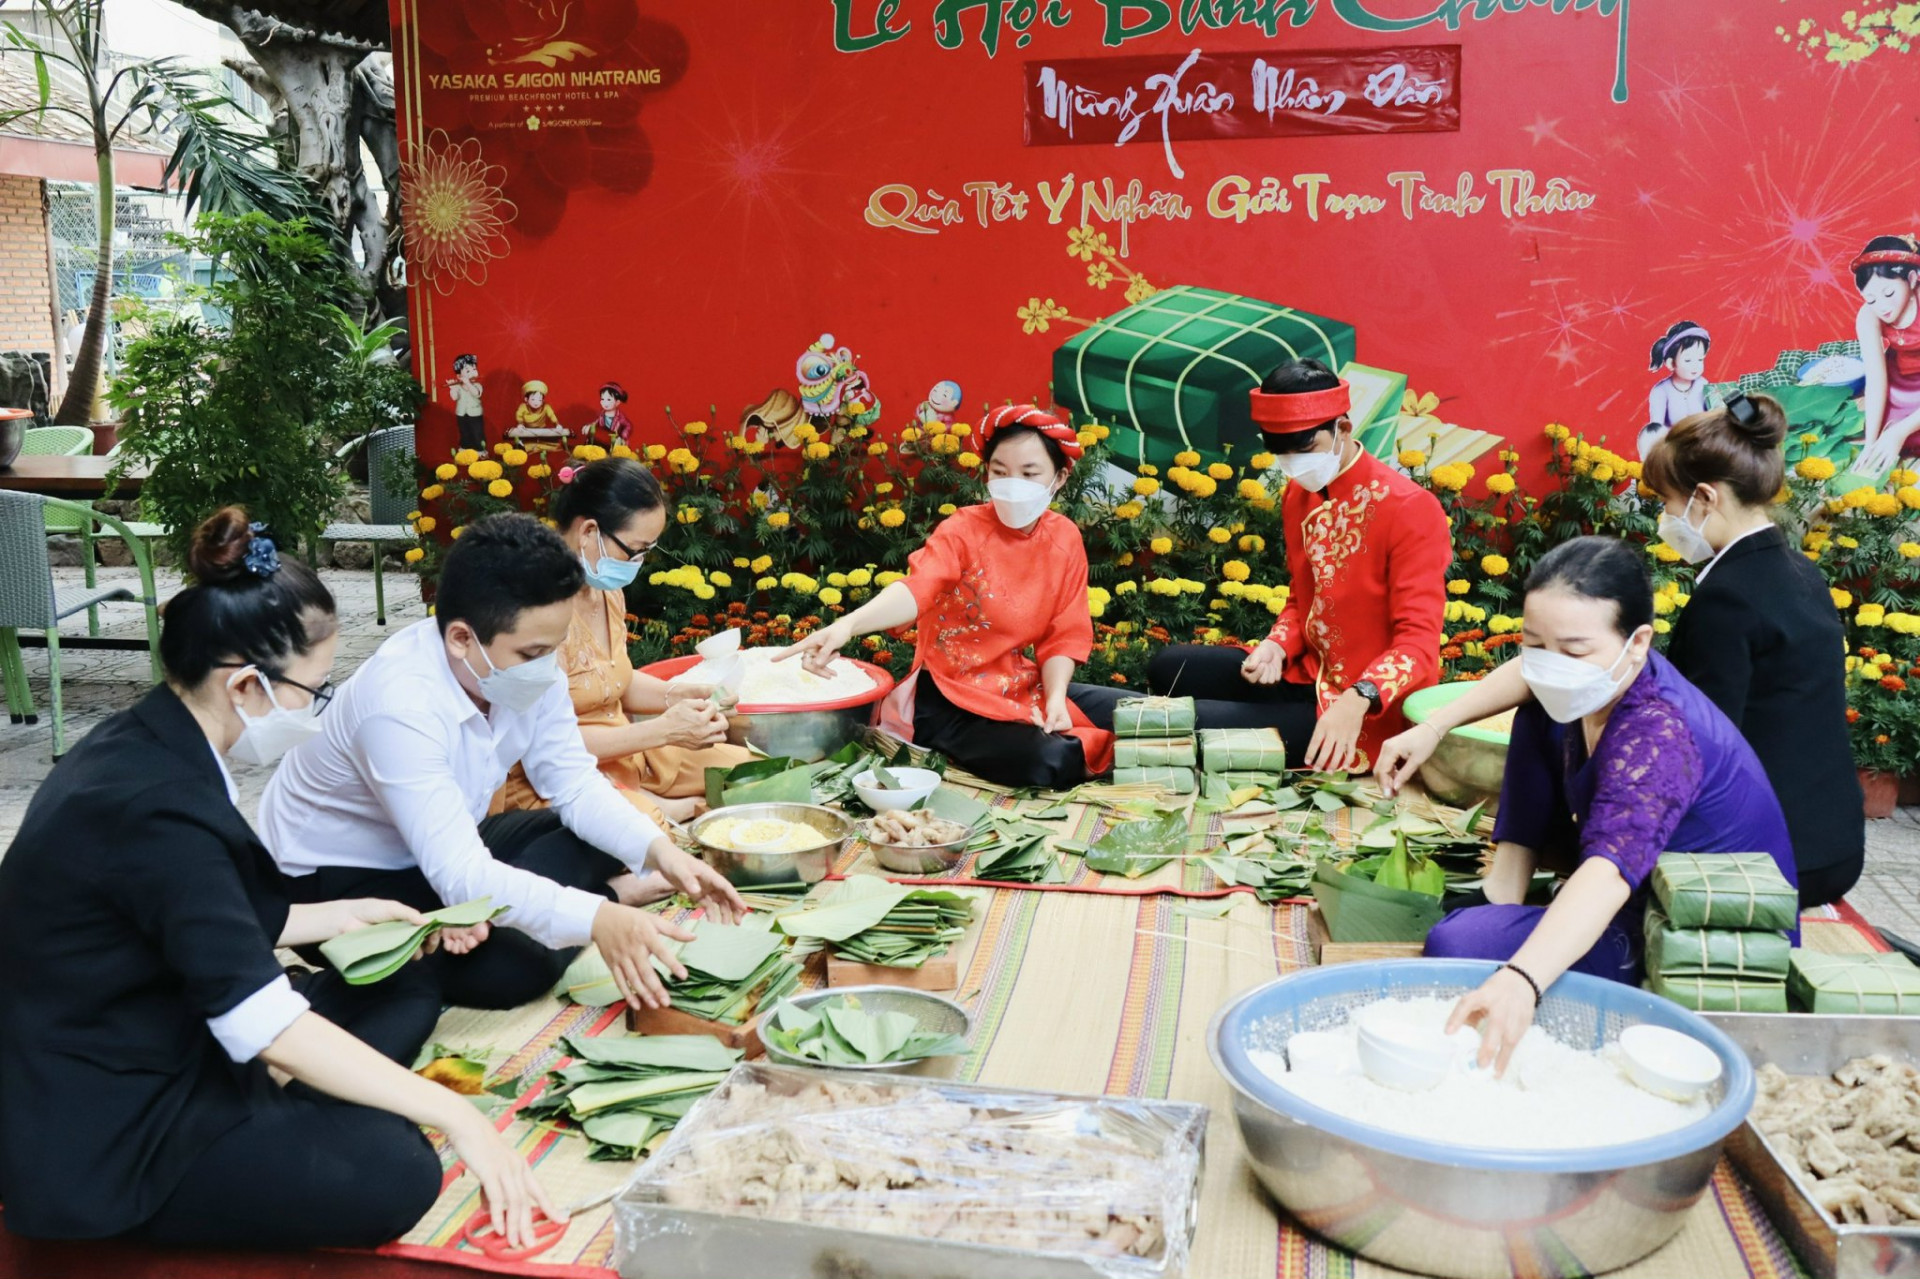 Khách và nhân viên khách sạn Yasaka-Saigon-Nhatrang cùng gói bánh trong không gian nhà vườn đậm chất truyền thống